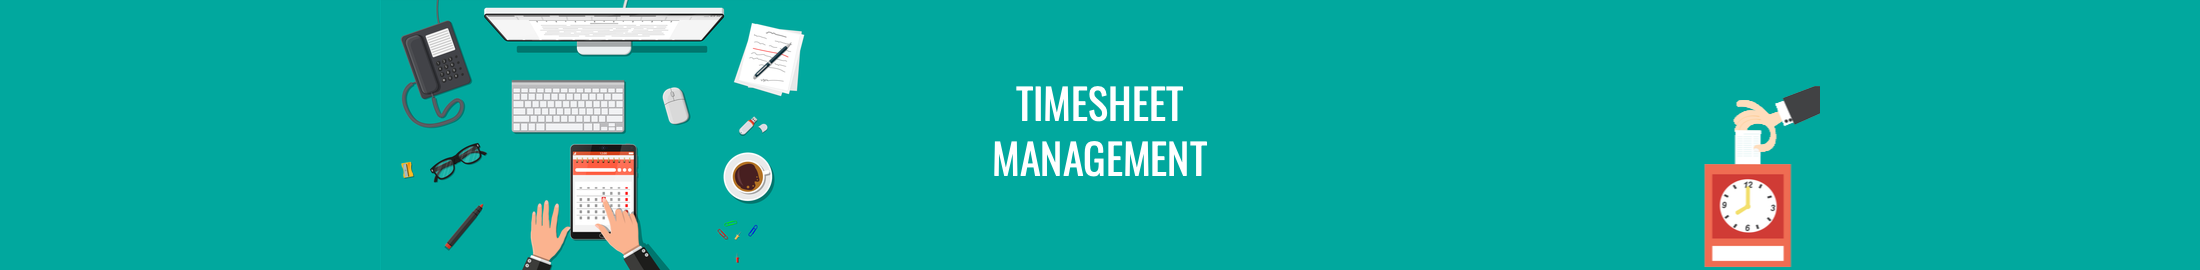 Timesheet Management Banner